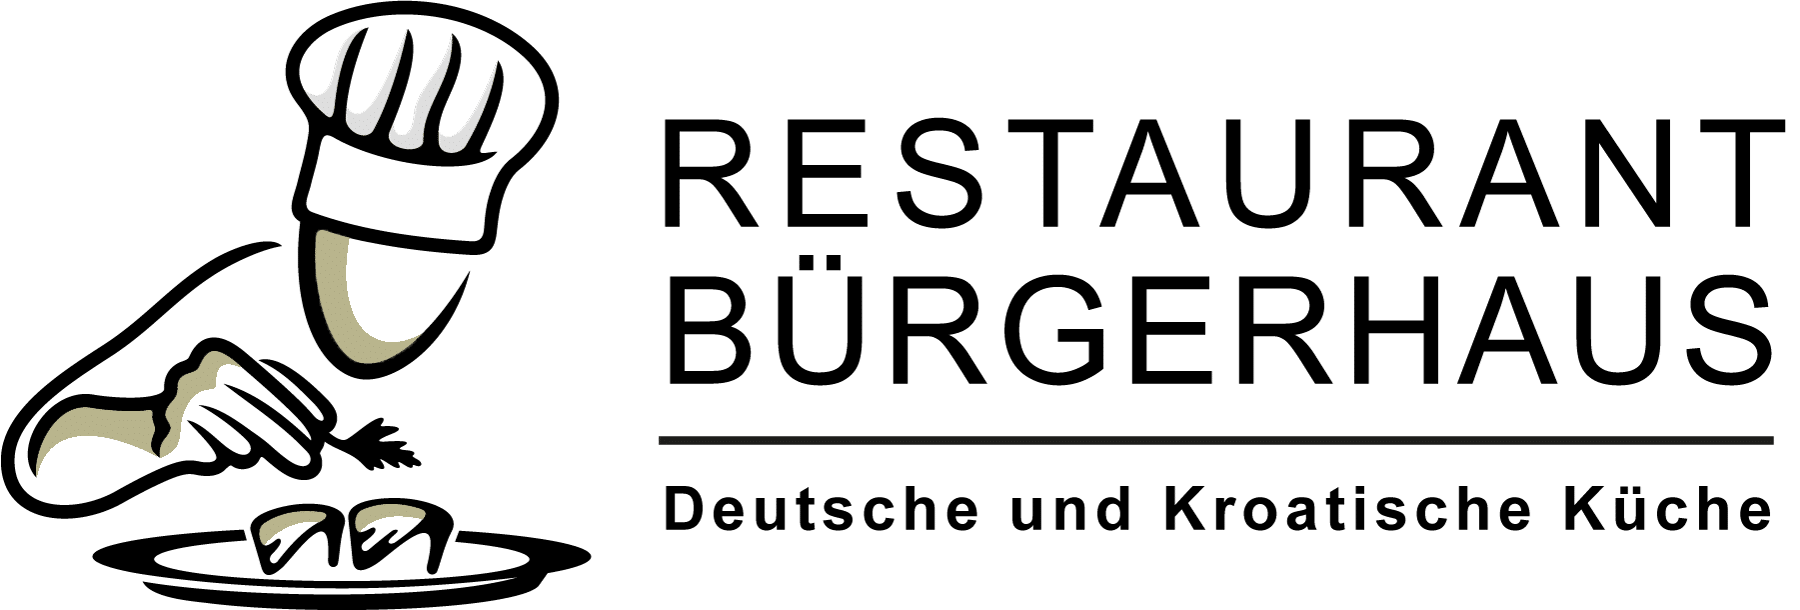 Restaurant Bürgerhaus Zellhausen Logo